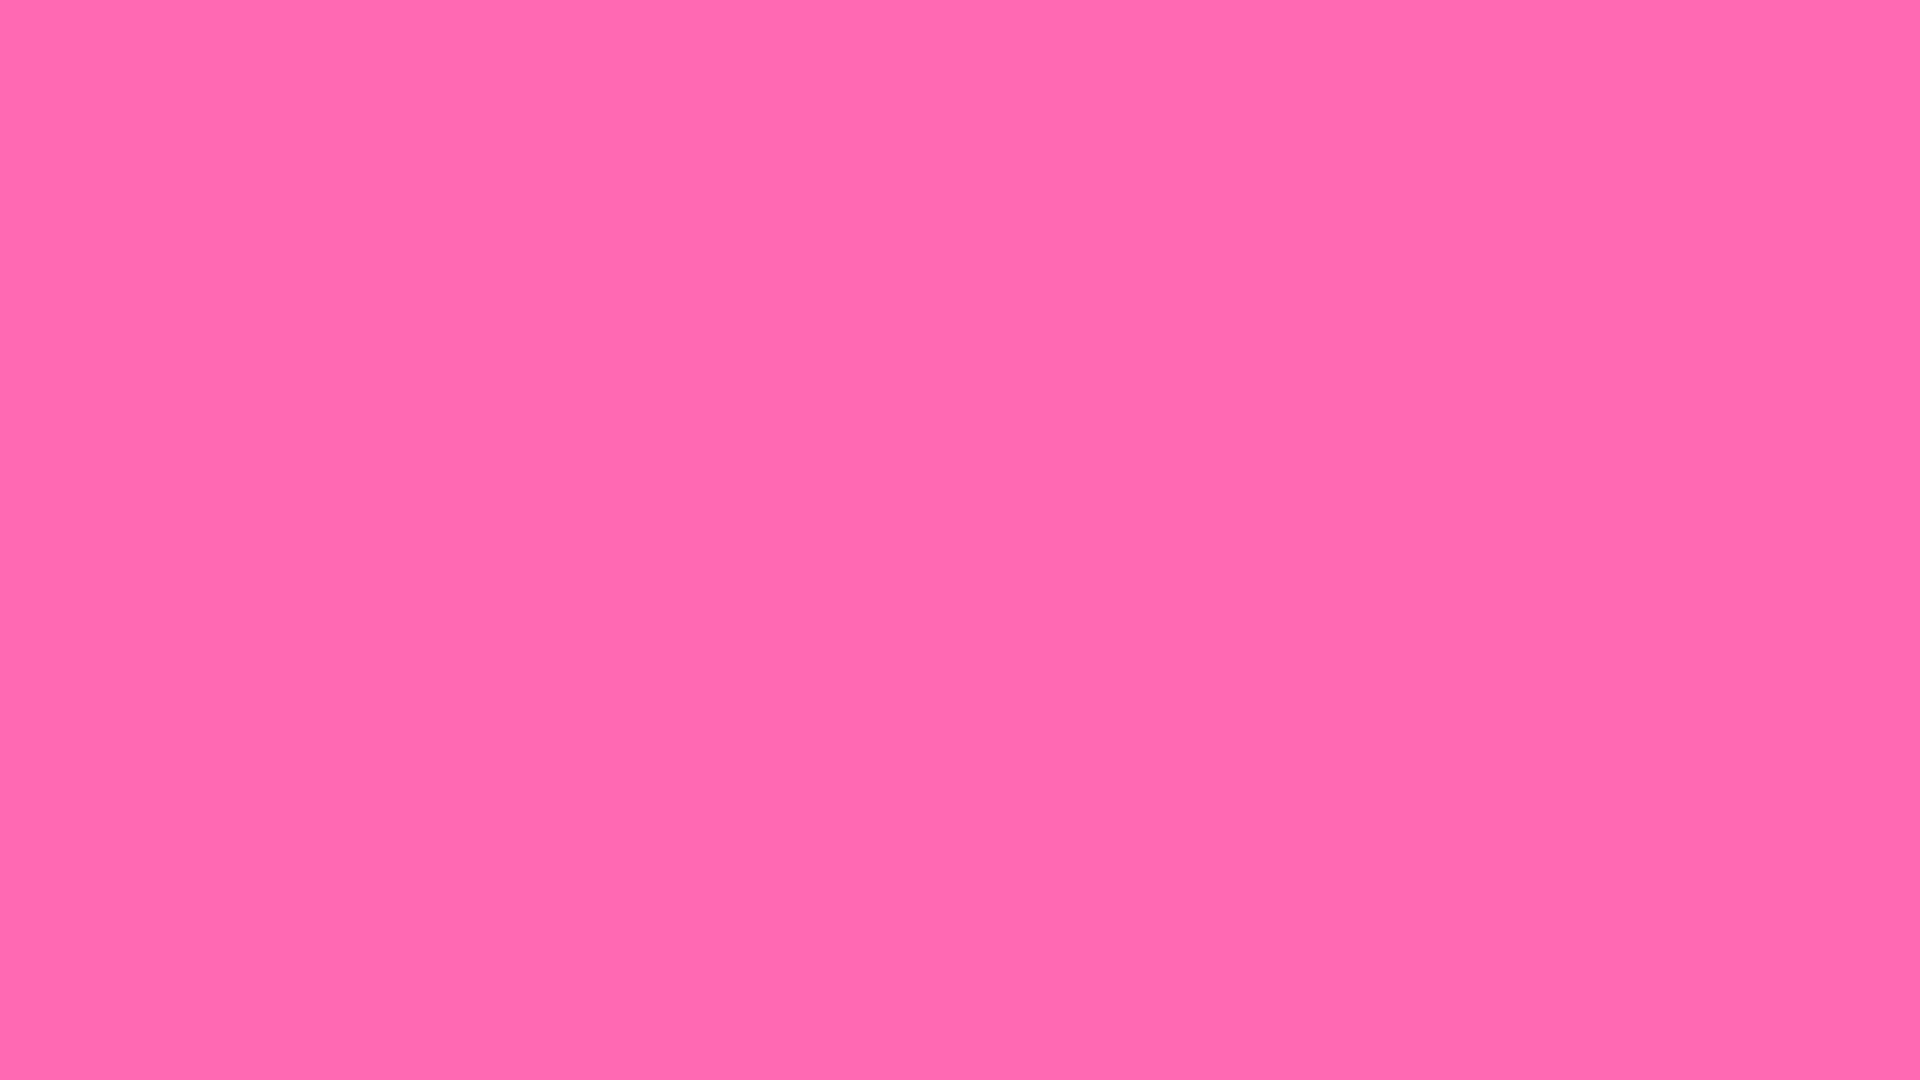 1920x1080 Hot Pink Wallpaper 11 Background Wallpaper